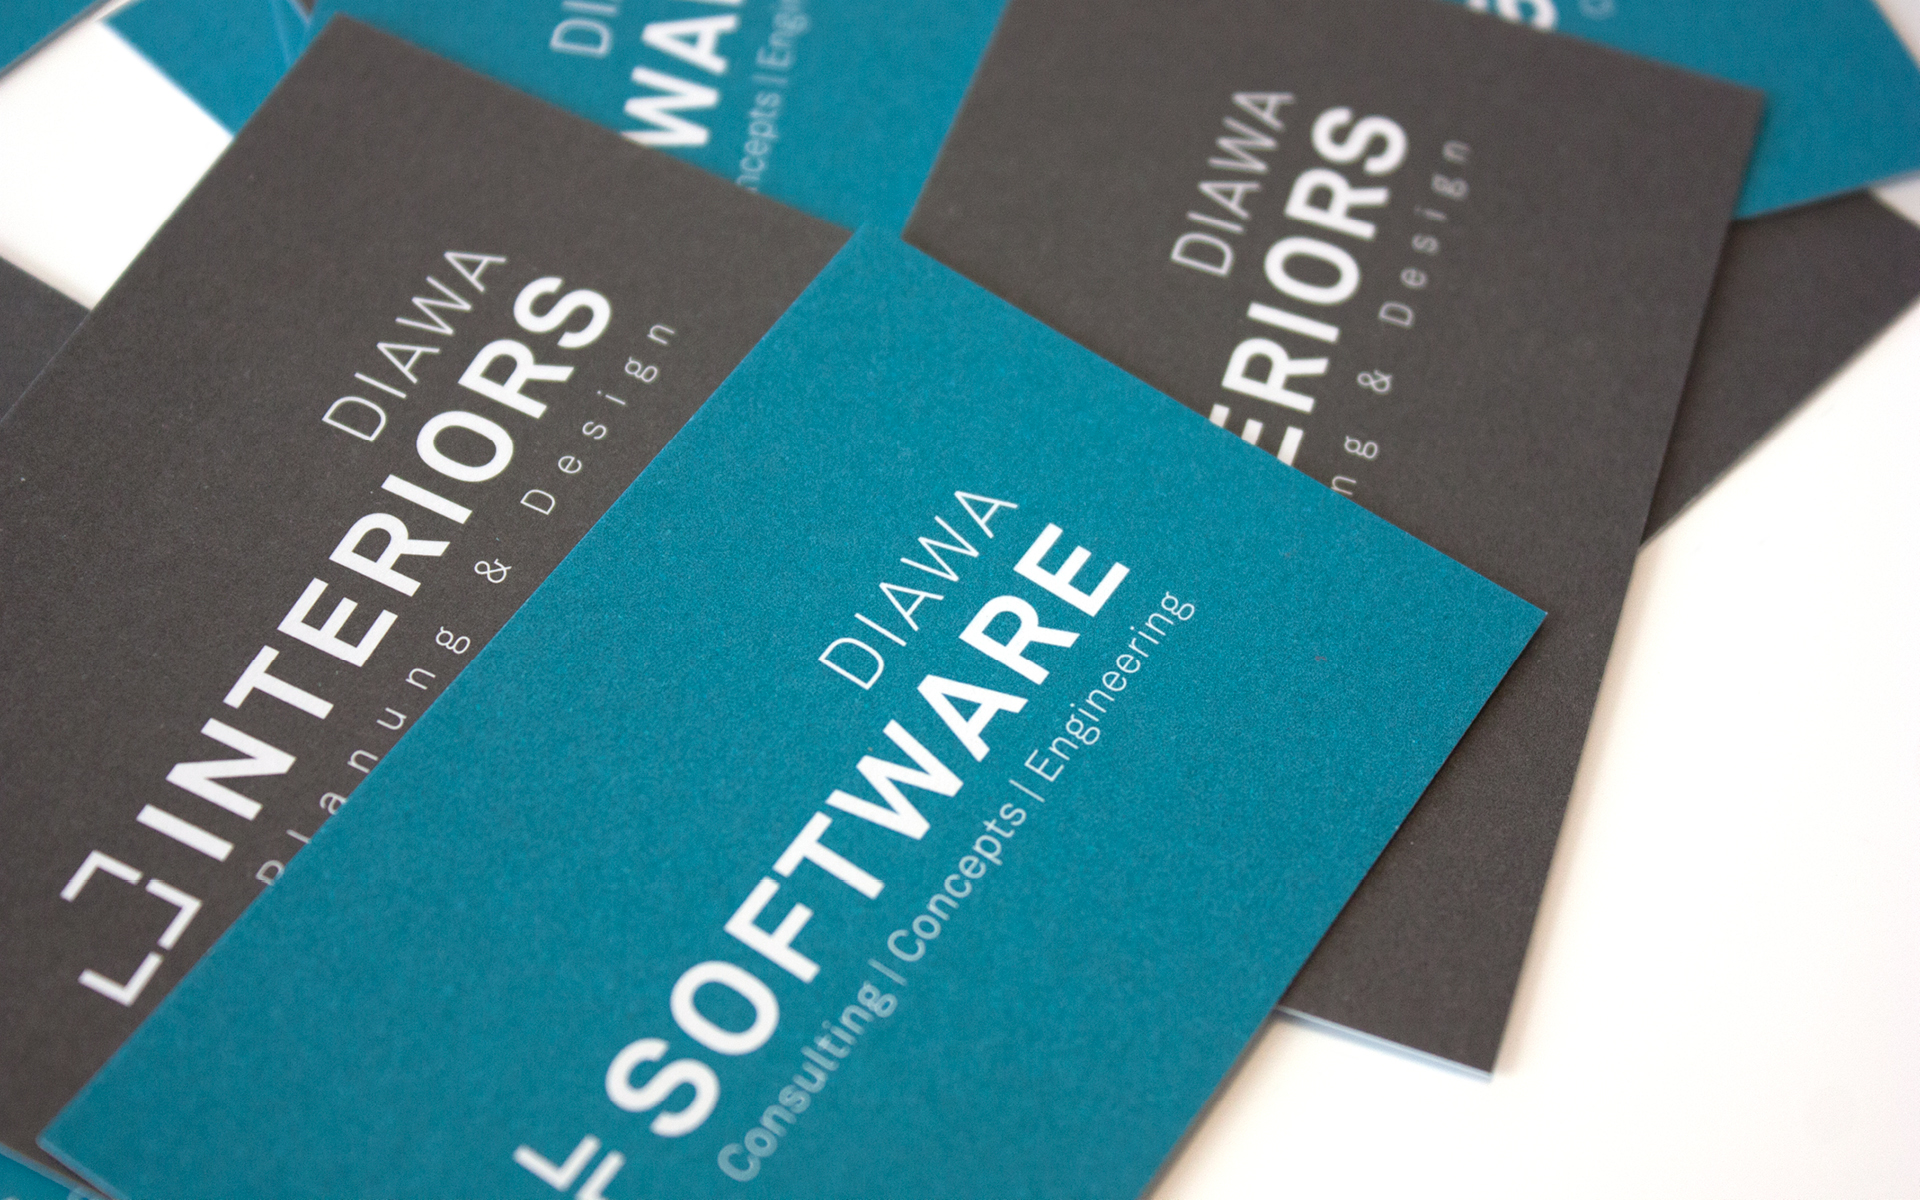 Erscheinungsbild für DIAWA Interiors und DIAWA Software von der Designagentur look! design